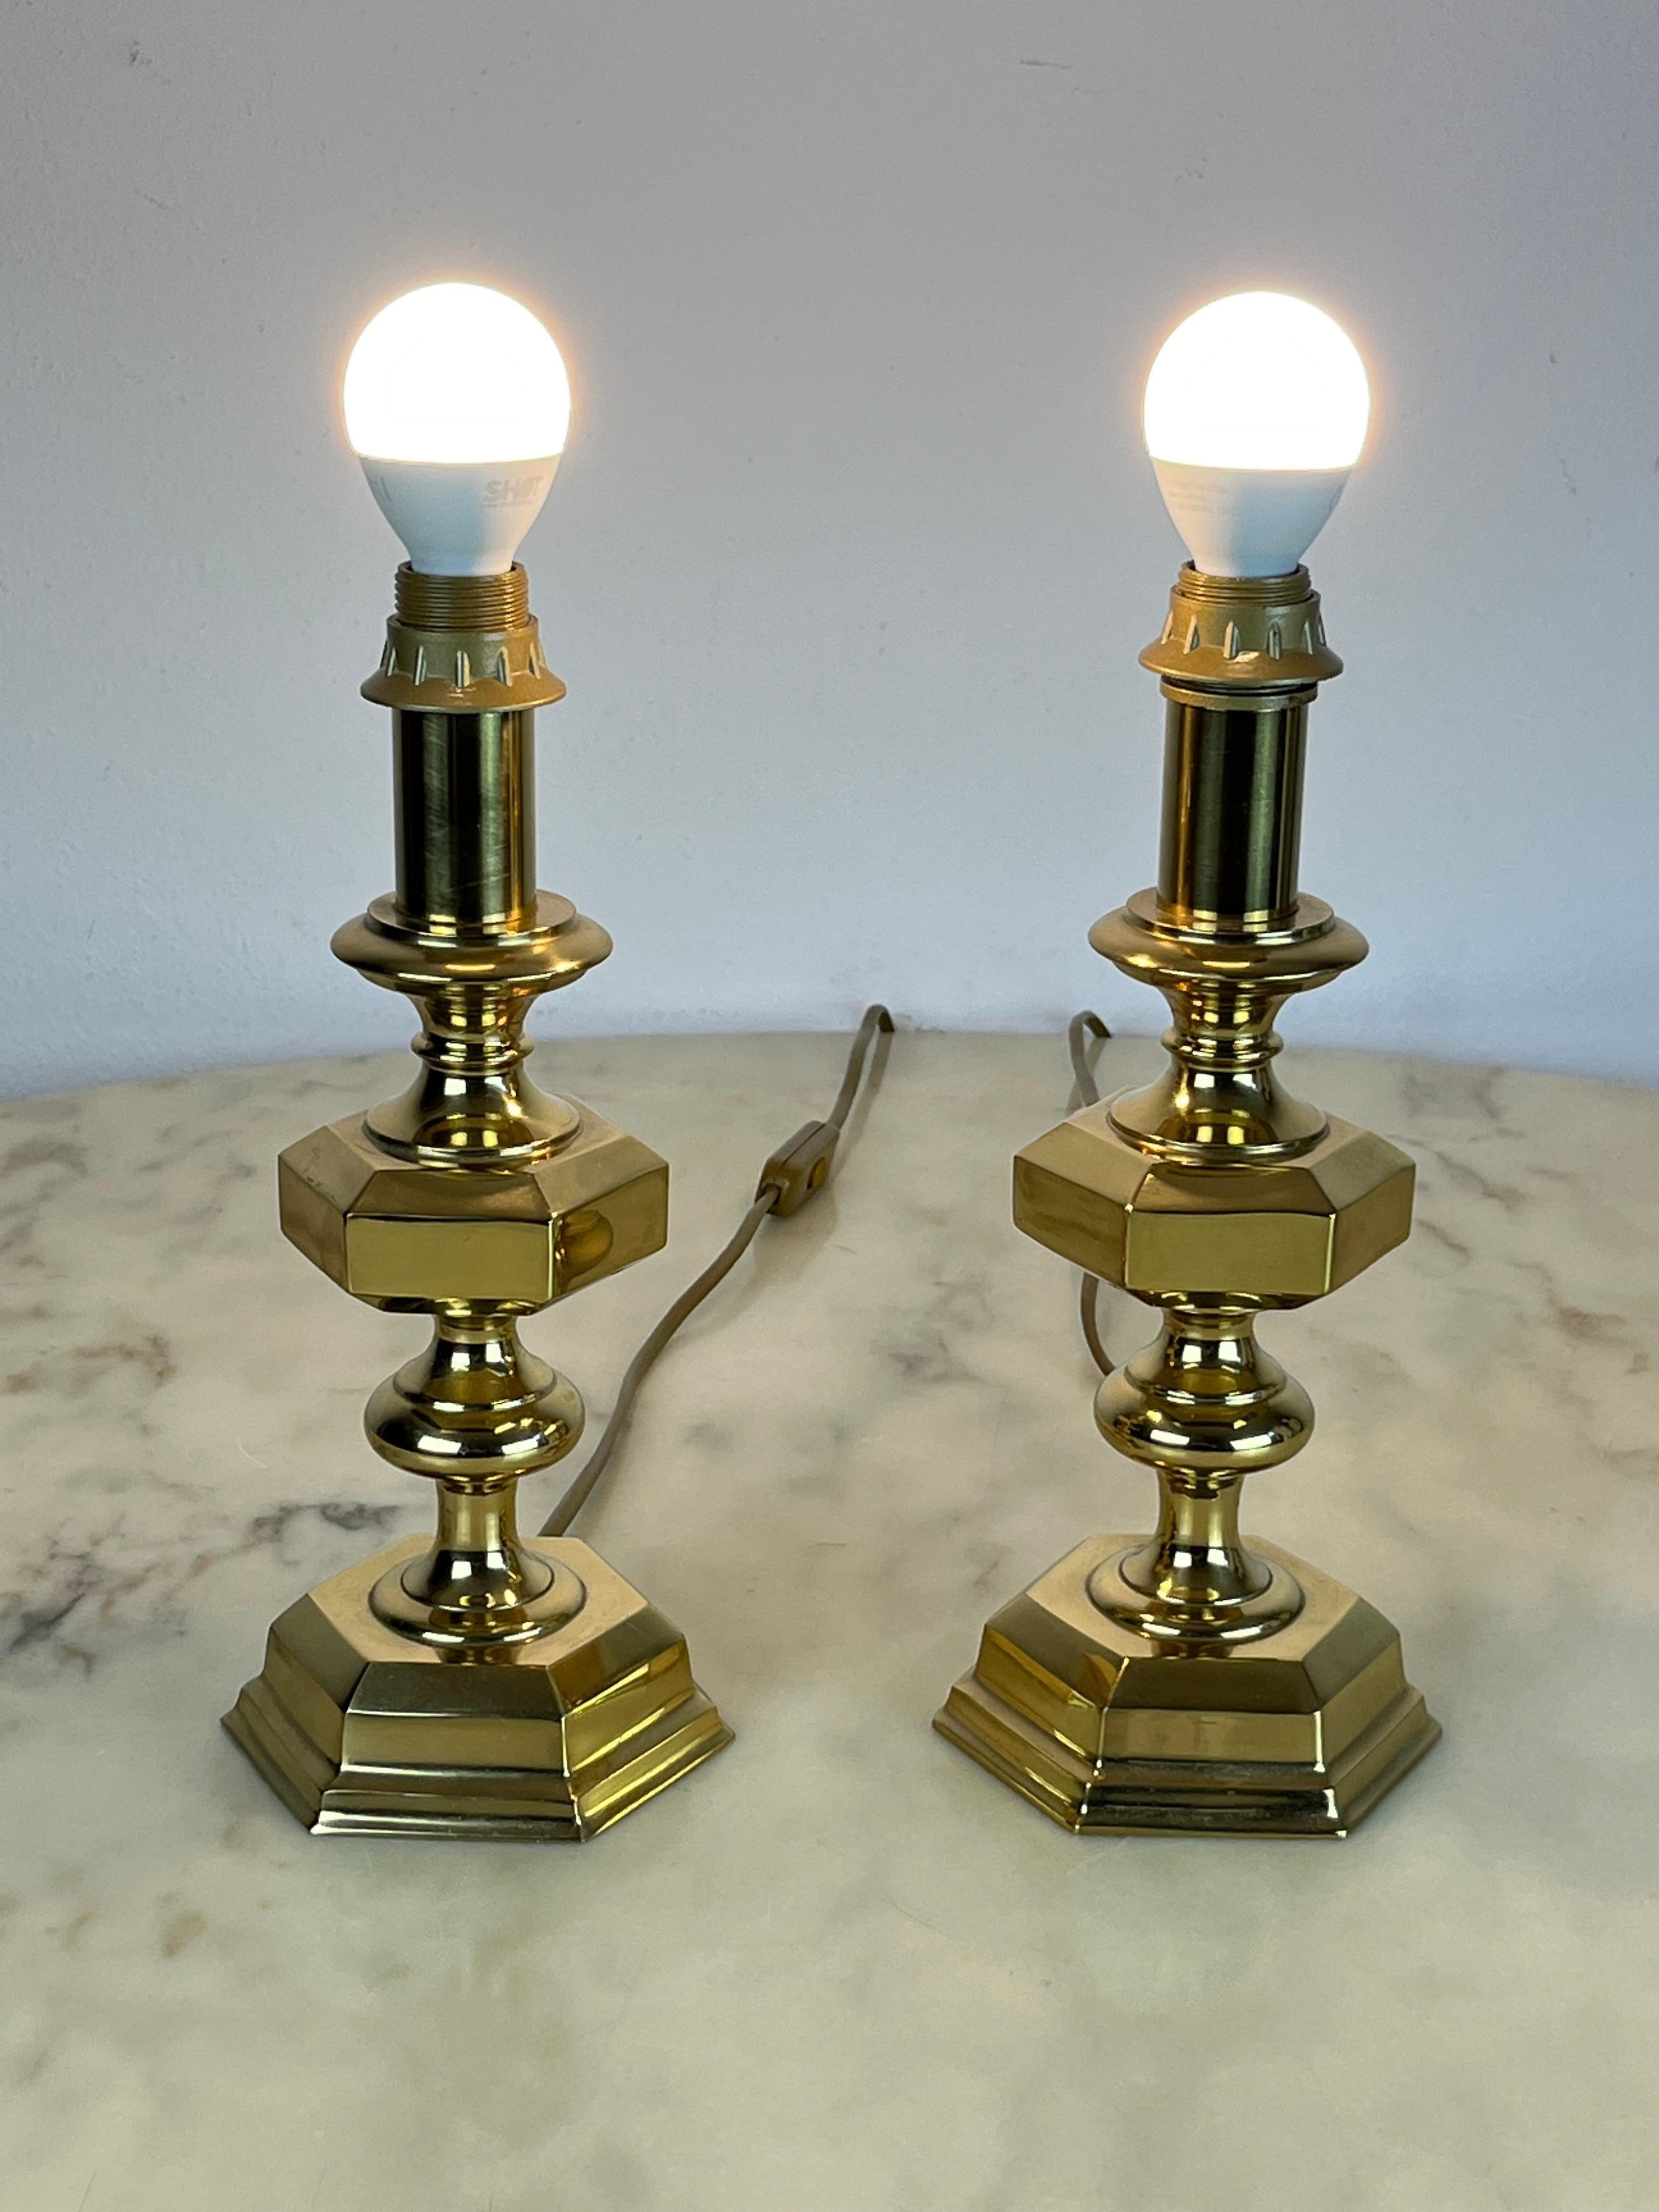 Paire de lampes de table italiennes en laiton, 1980
Trouvés dans un appartement noble, ils sont intacts et en état de marche. Ils peuvent être utilisés dans une chambre à coucher, à placer sur les tables de chevet. Elles mesurent 27,5 cm de hauteur